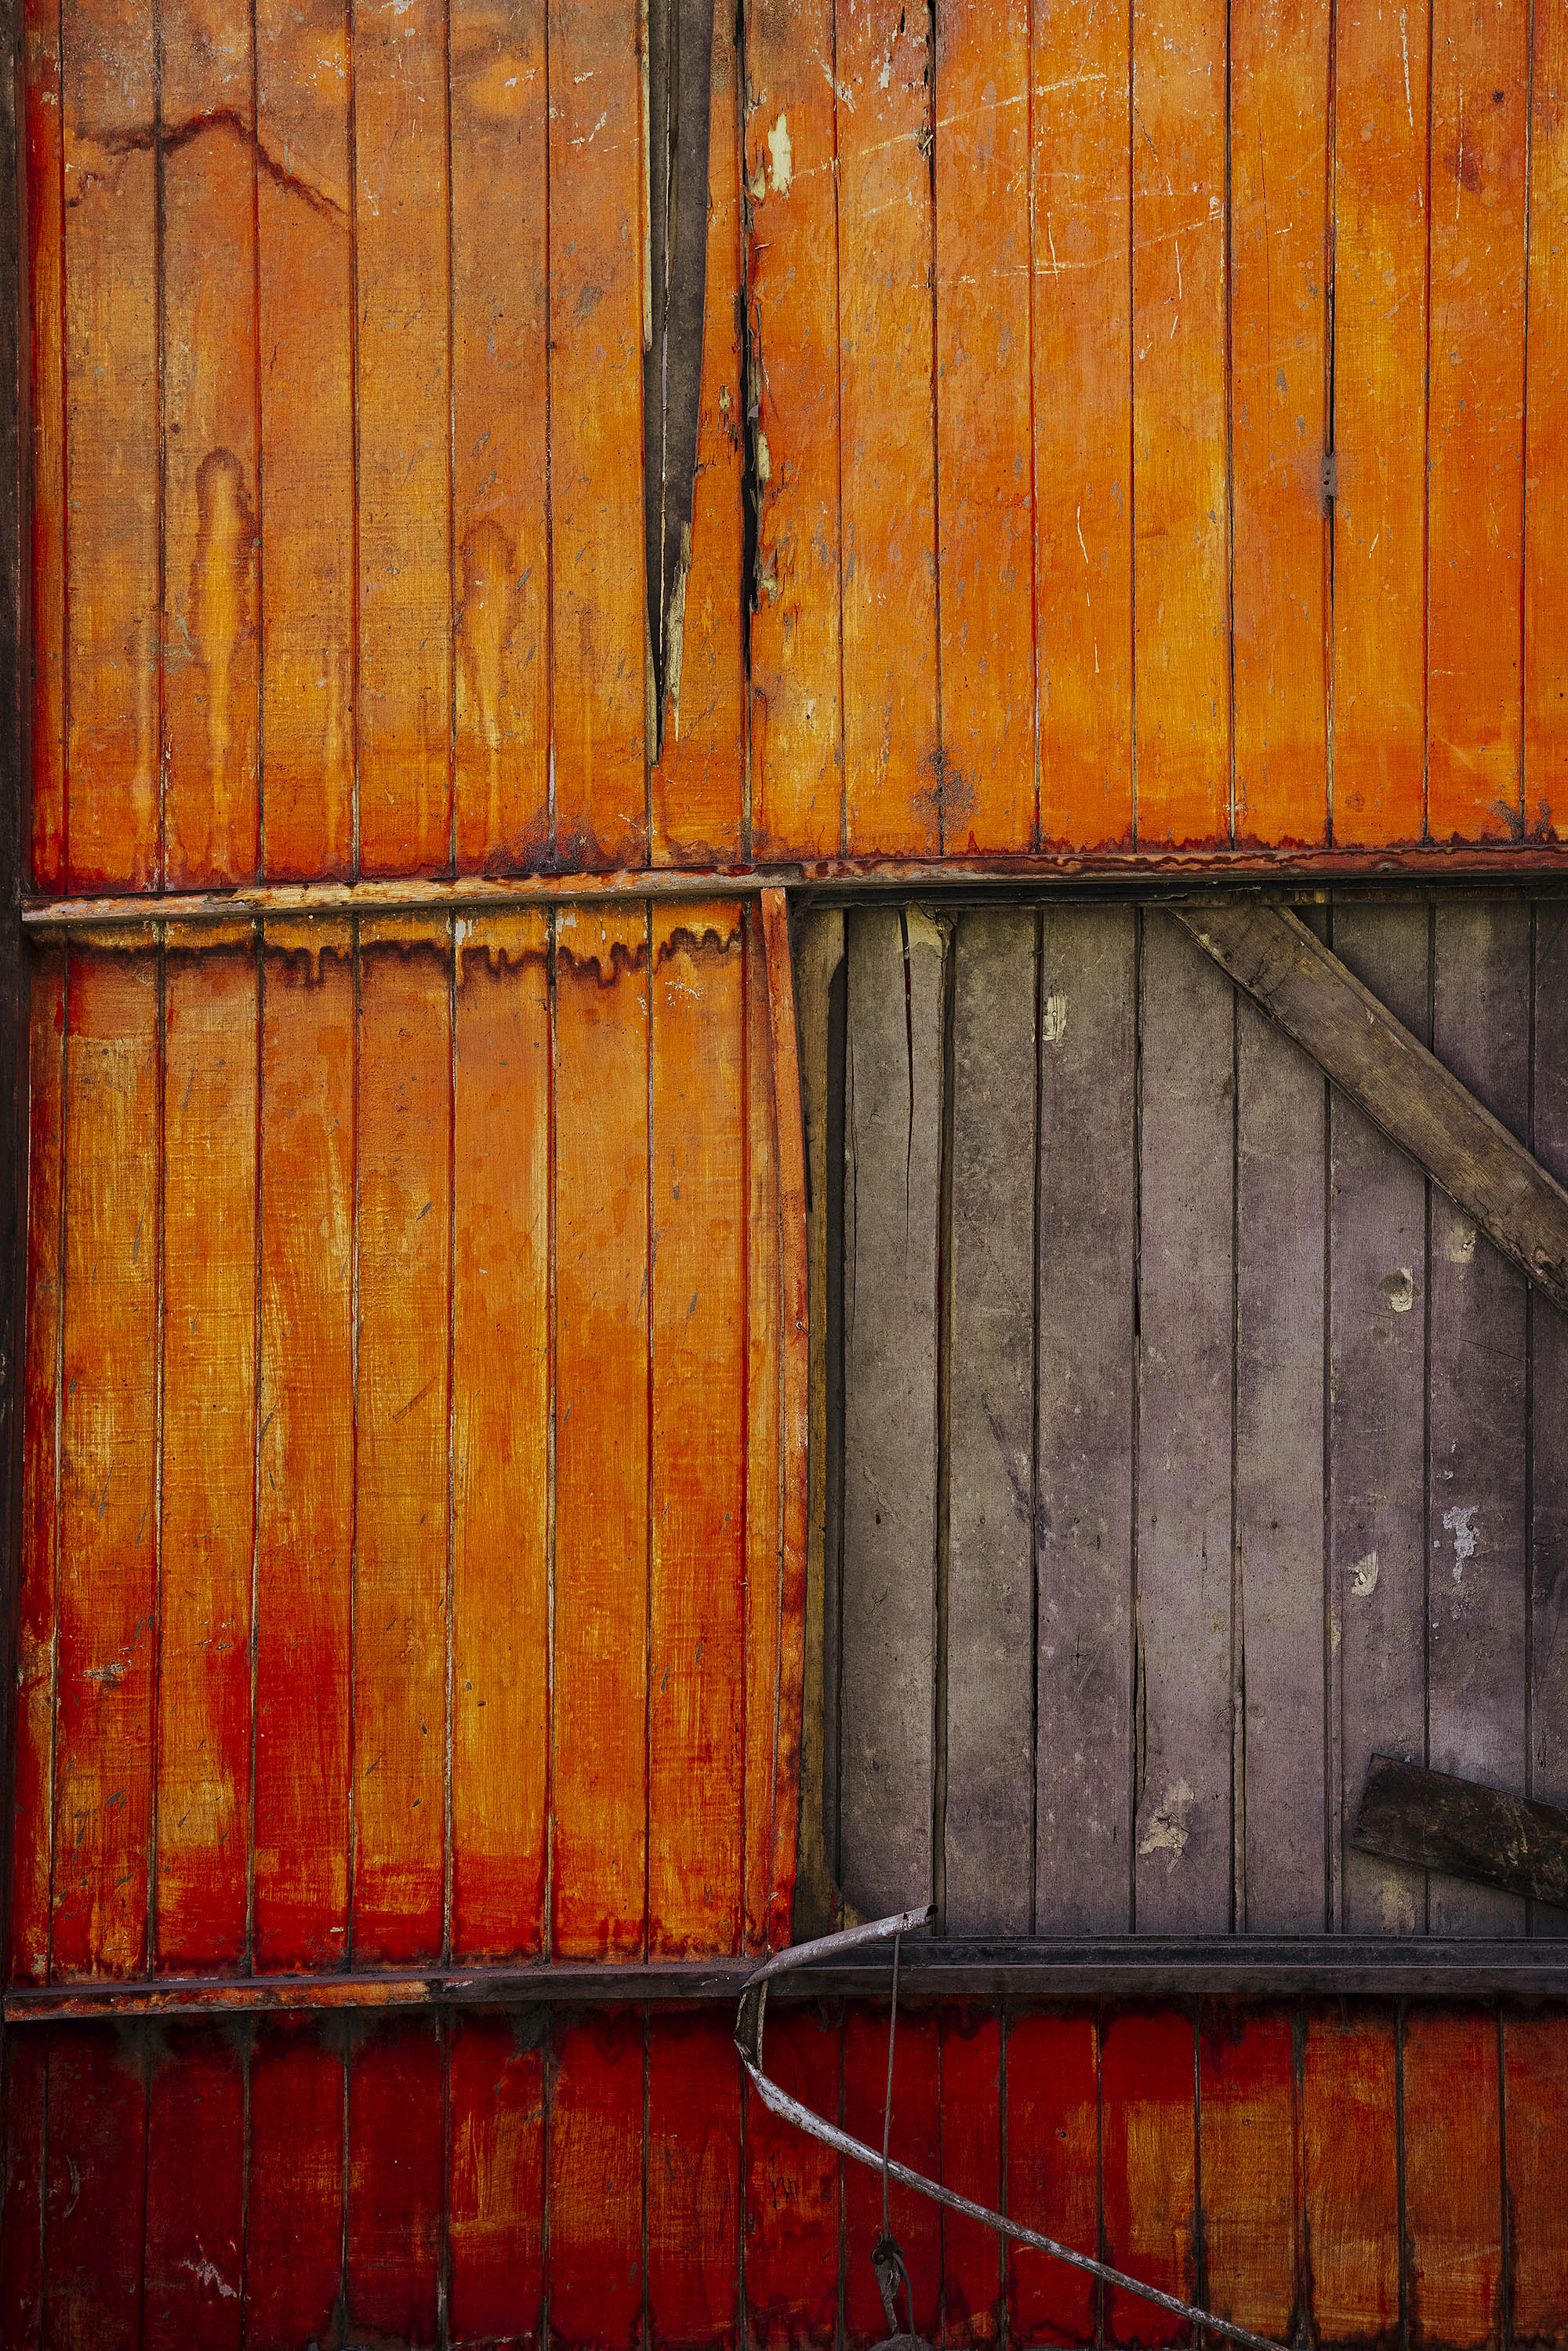 Cabanon en bois orange photographié avec une partie manquant de la peinture